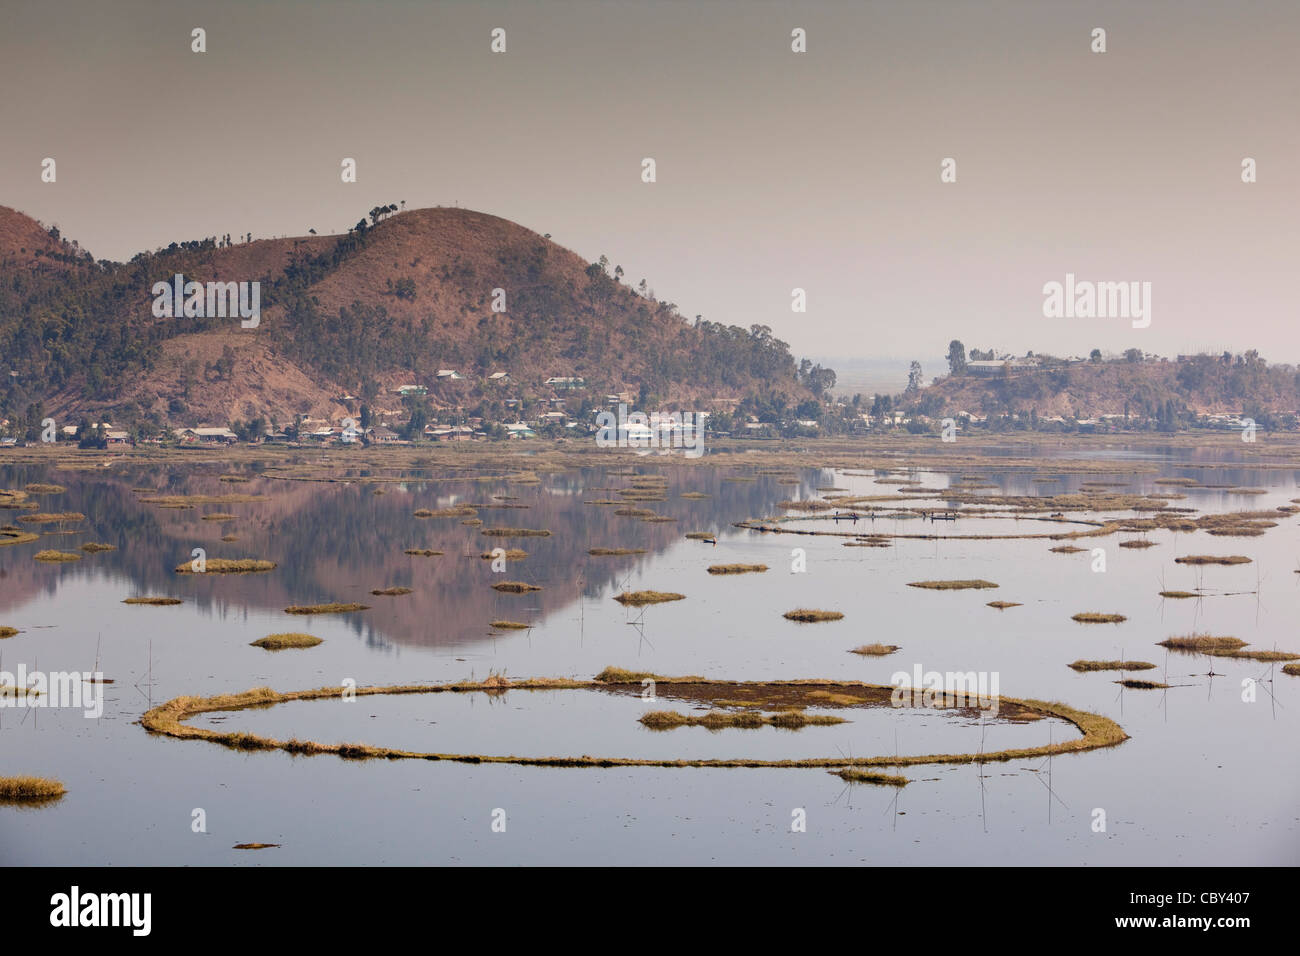 Indien, Manipur, Imphal, Loktak See, kreisförmige schwimmenden Inseln Versandkäfigen aus Wasserhyazinthe Unkraut Stockfoto